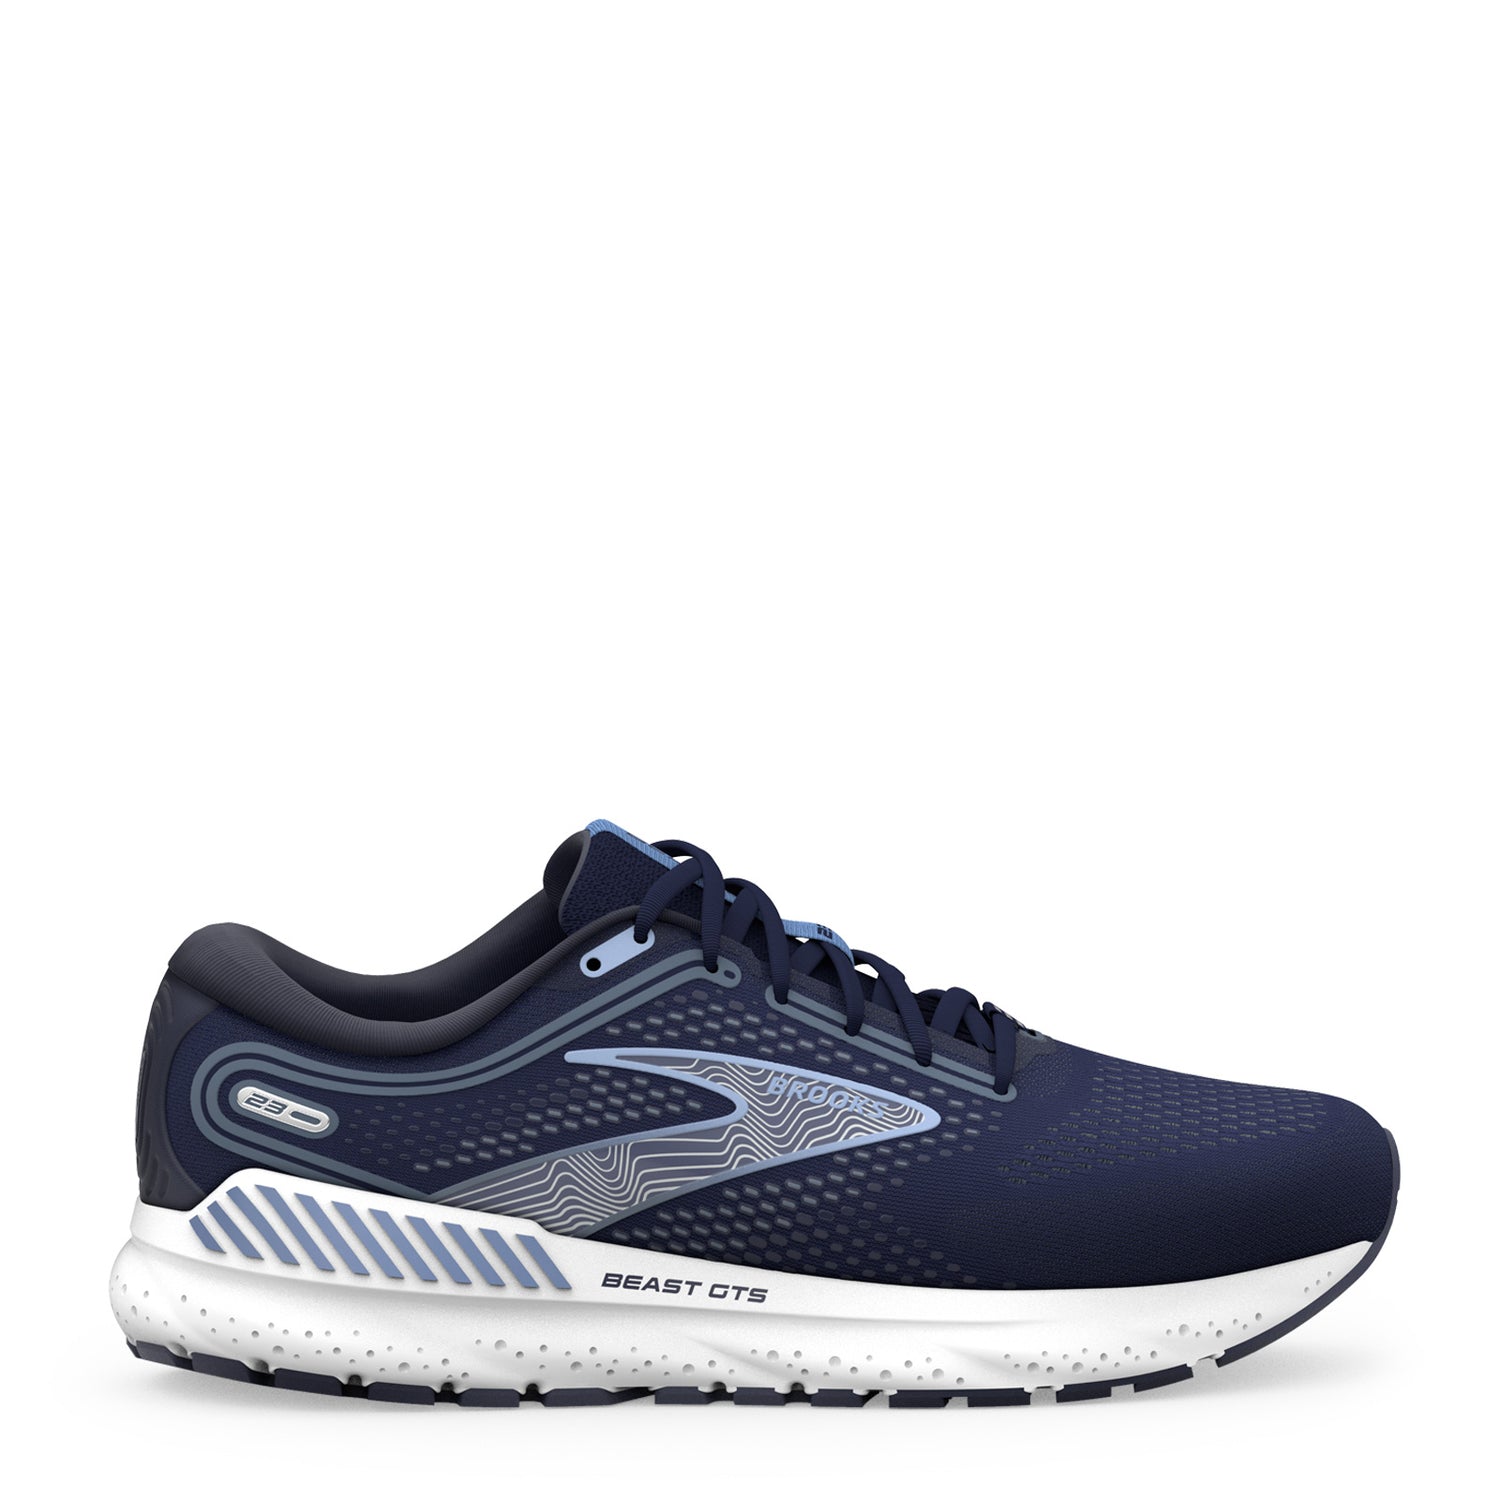 Peltz Shoes  Men's Brooks Beast GTS 23 Running Shoe - Wide Width Navy/Blue/White 110401 2E 495